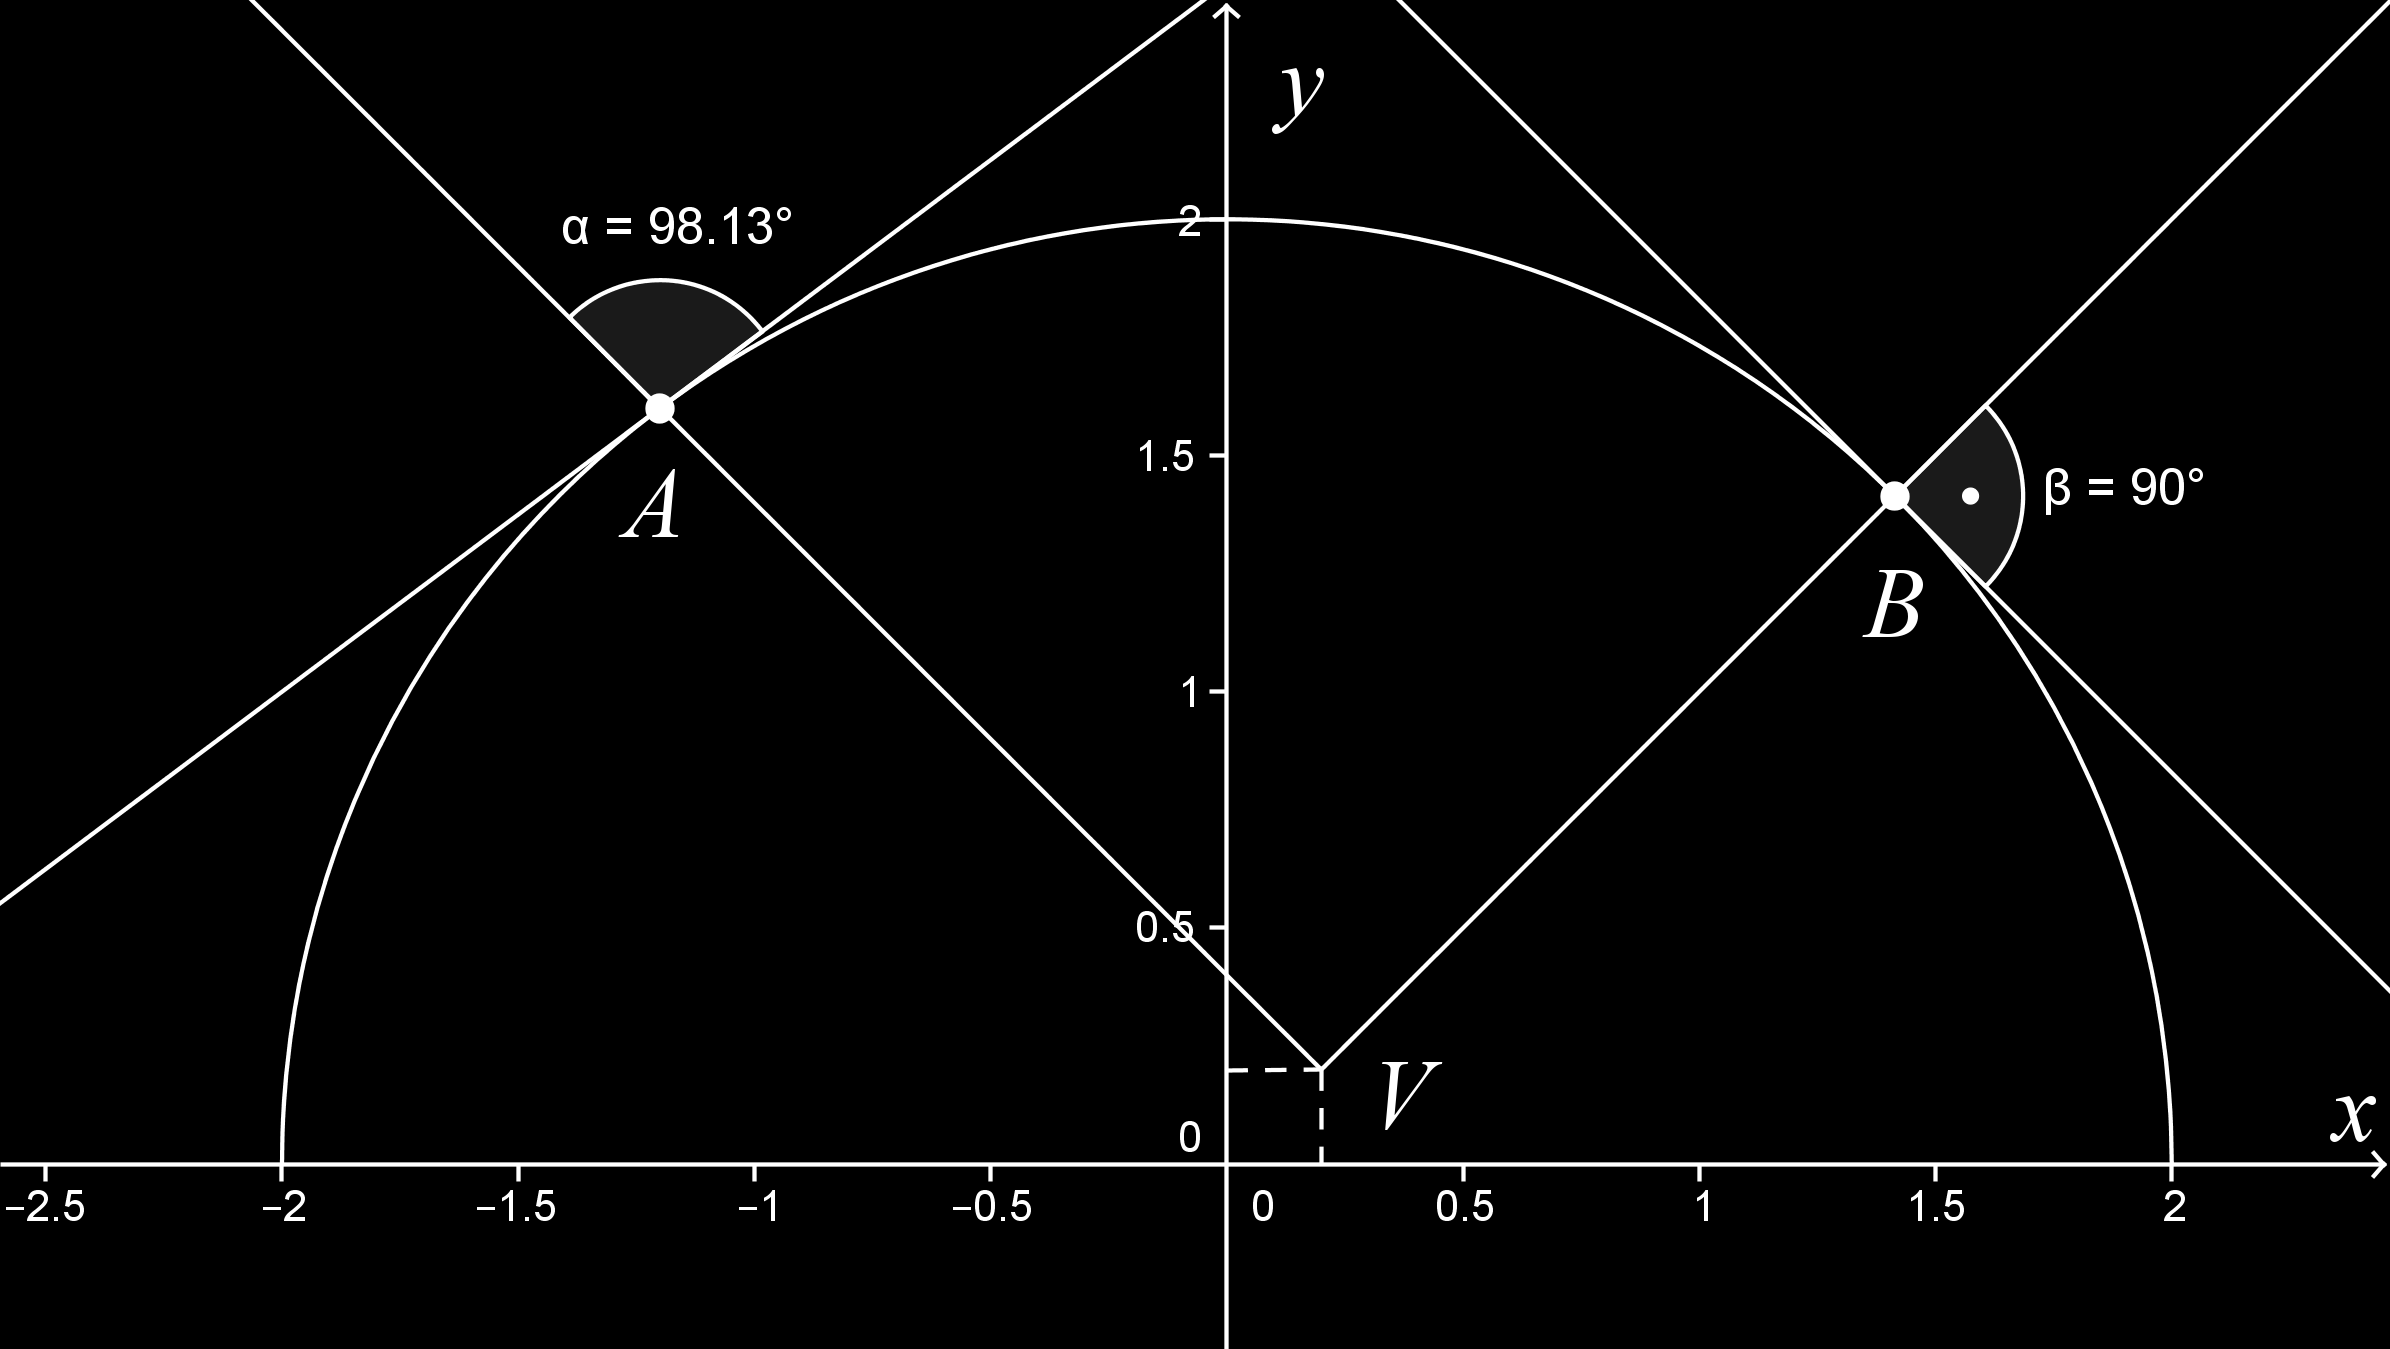 (s použitím Geogebry) Zobrazíme grafy obou zadaných funkcí. Vidíme, že grafem funkce f je horní polokružnice x + y = 4, grafem funkce g je lomená čára, ramena pravého úhlu s vrcholem V [0, ; 0, ].